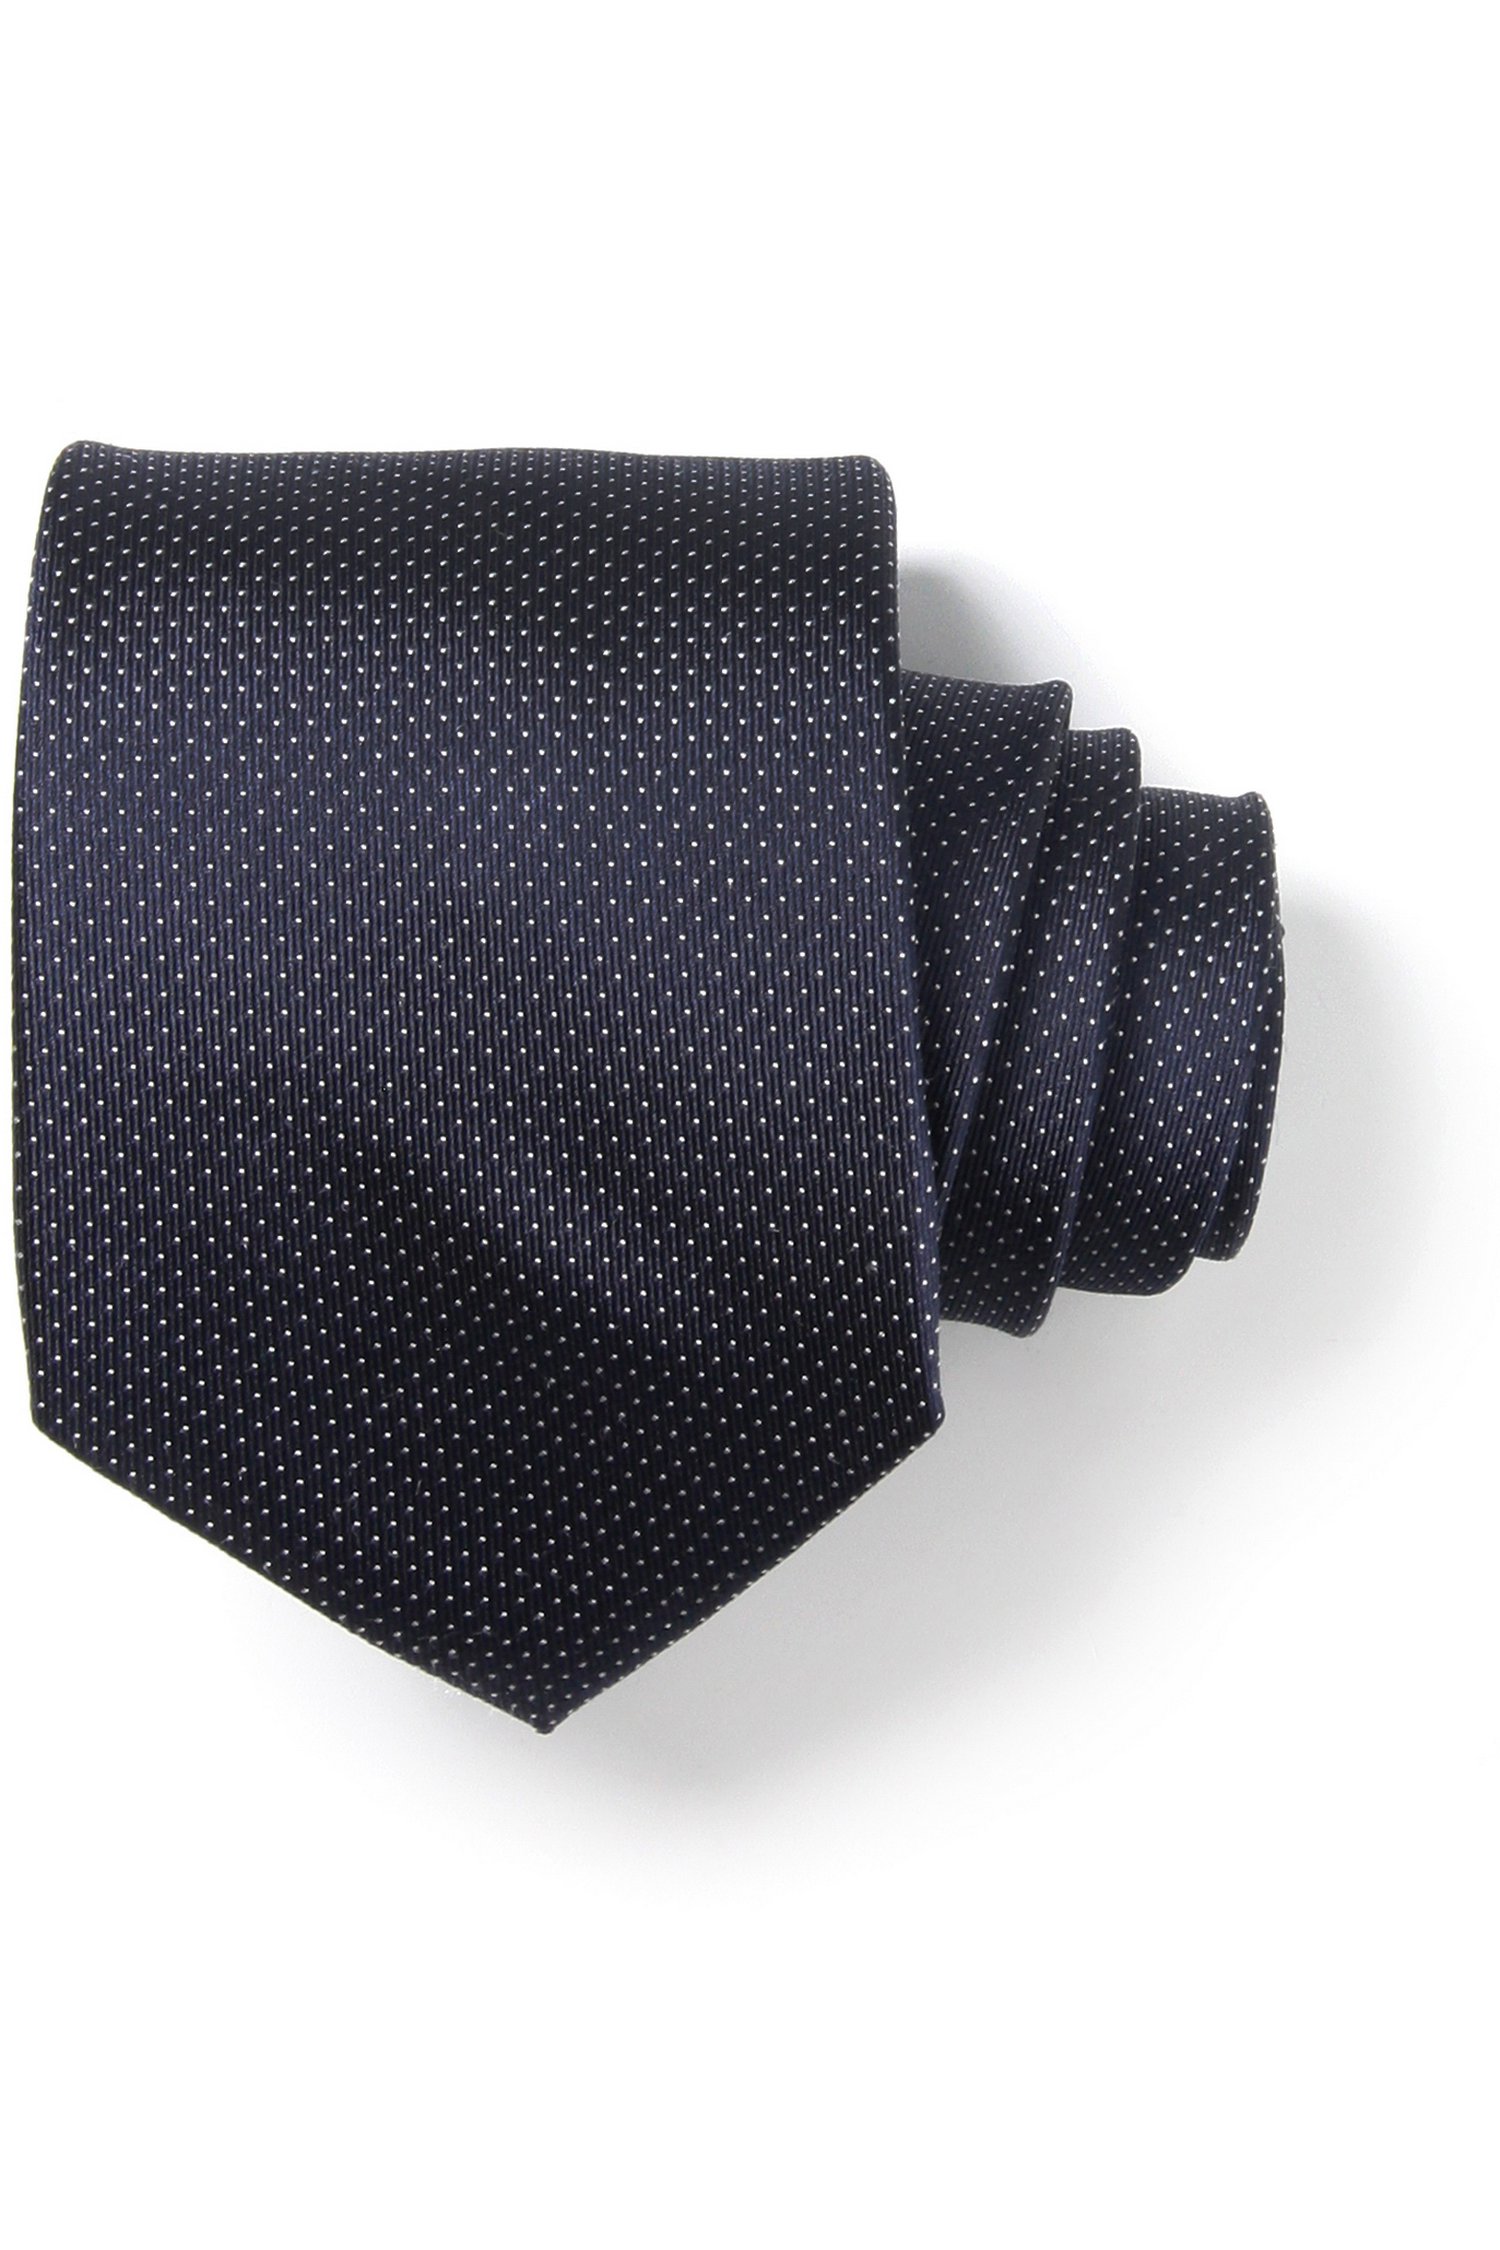 Cravate bleu marine avec fin motif pointillé de Michaelis pour Hommes